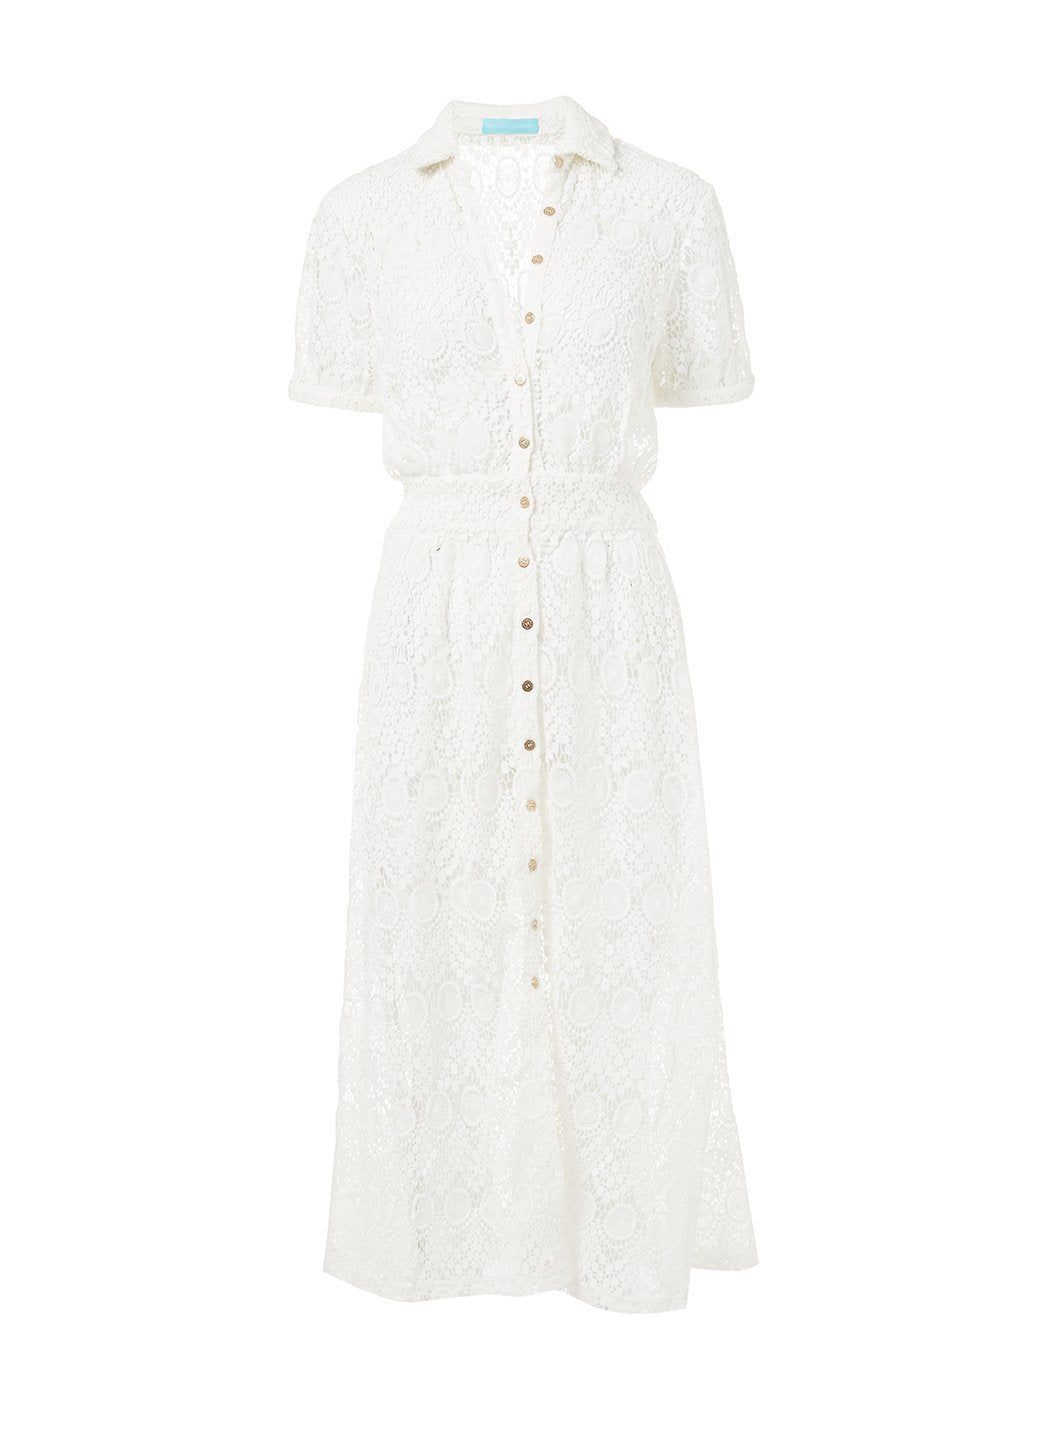 april white lace midi button down shirt dress 2019